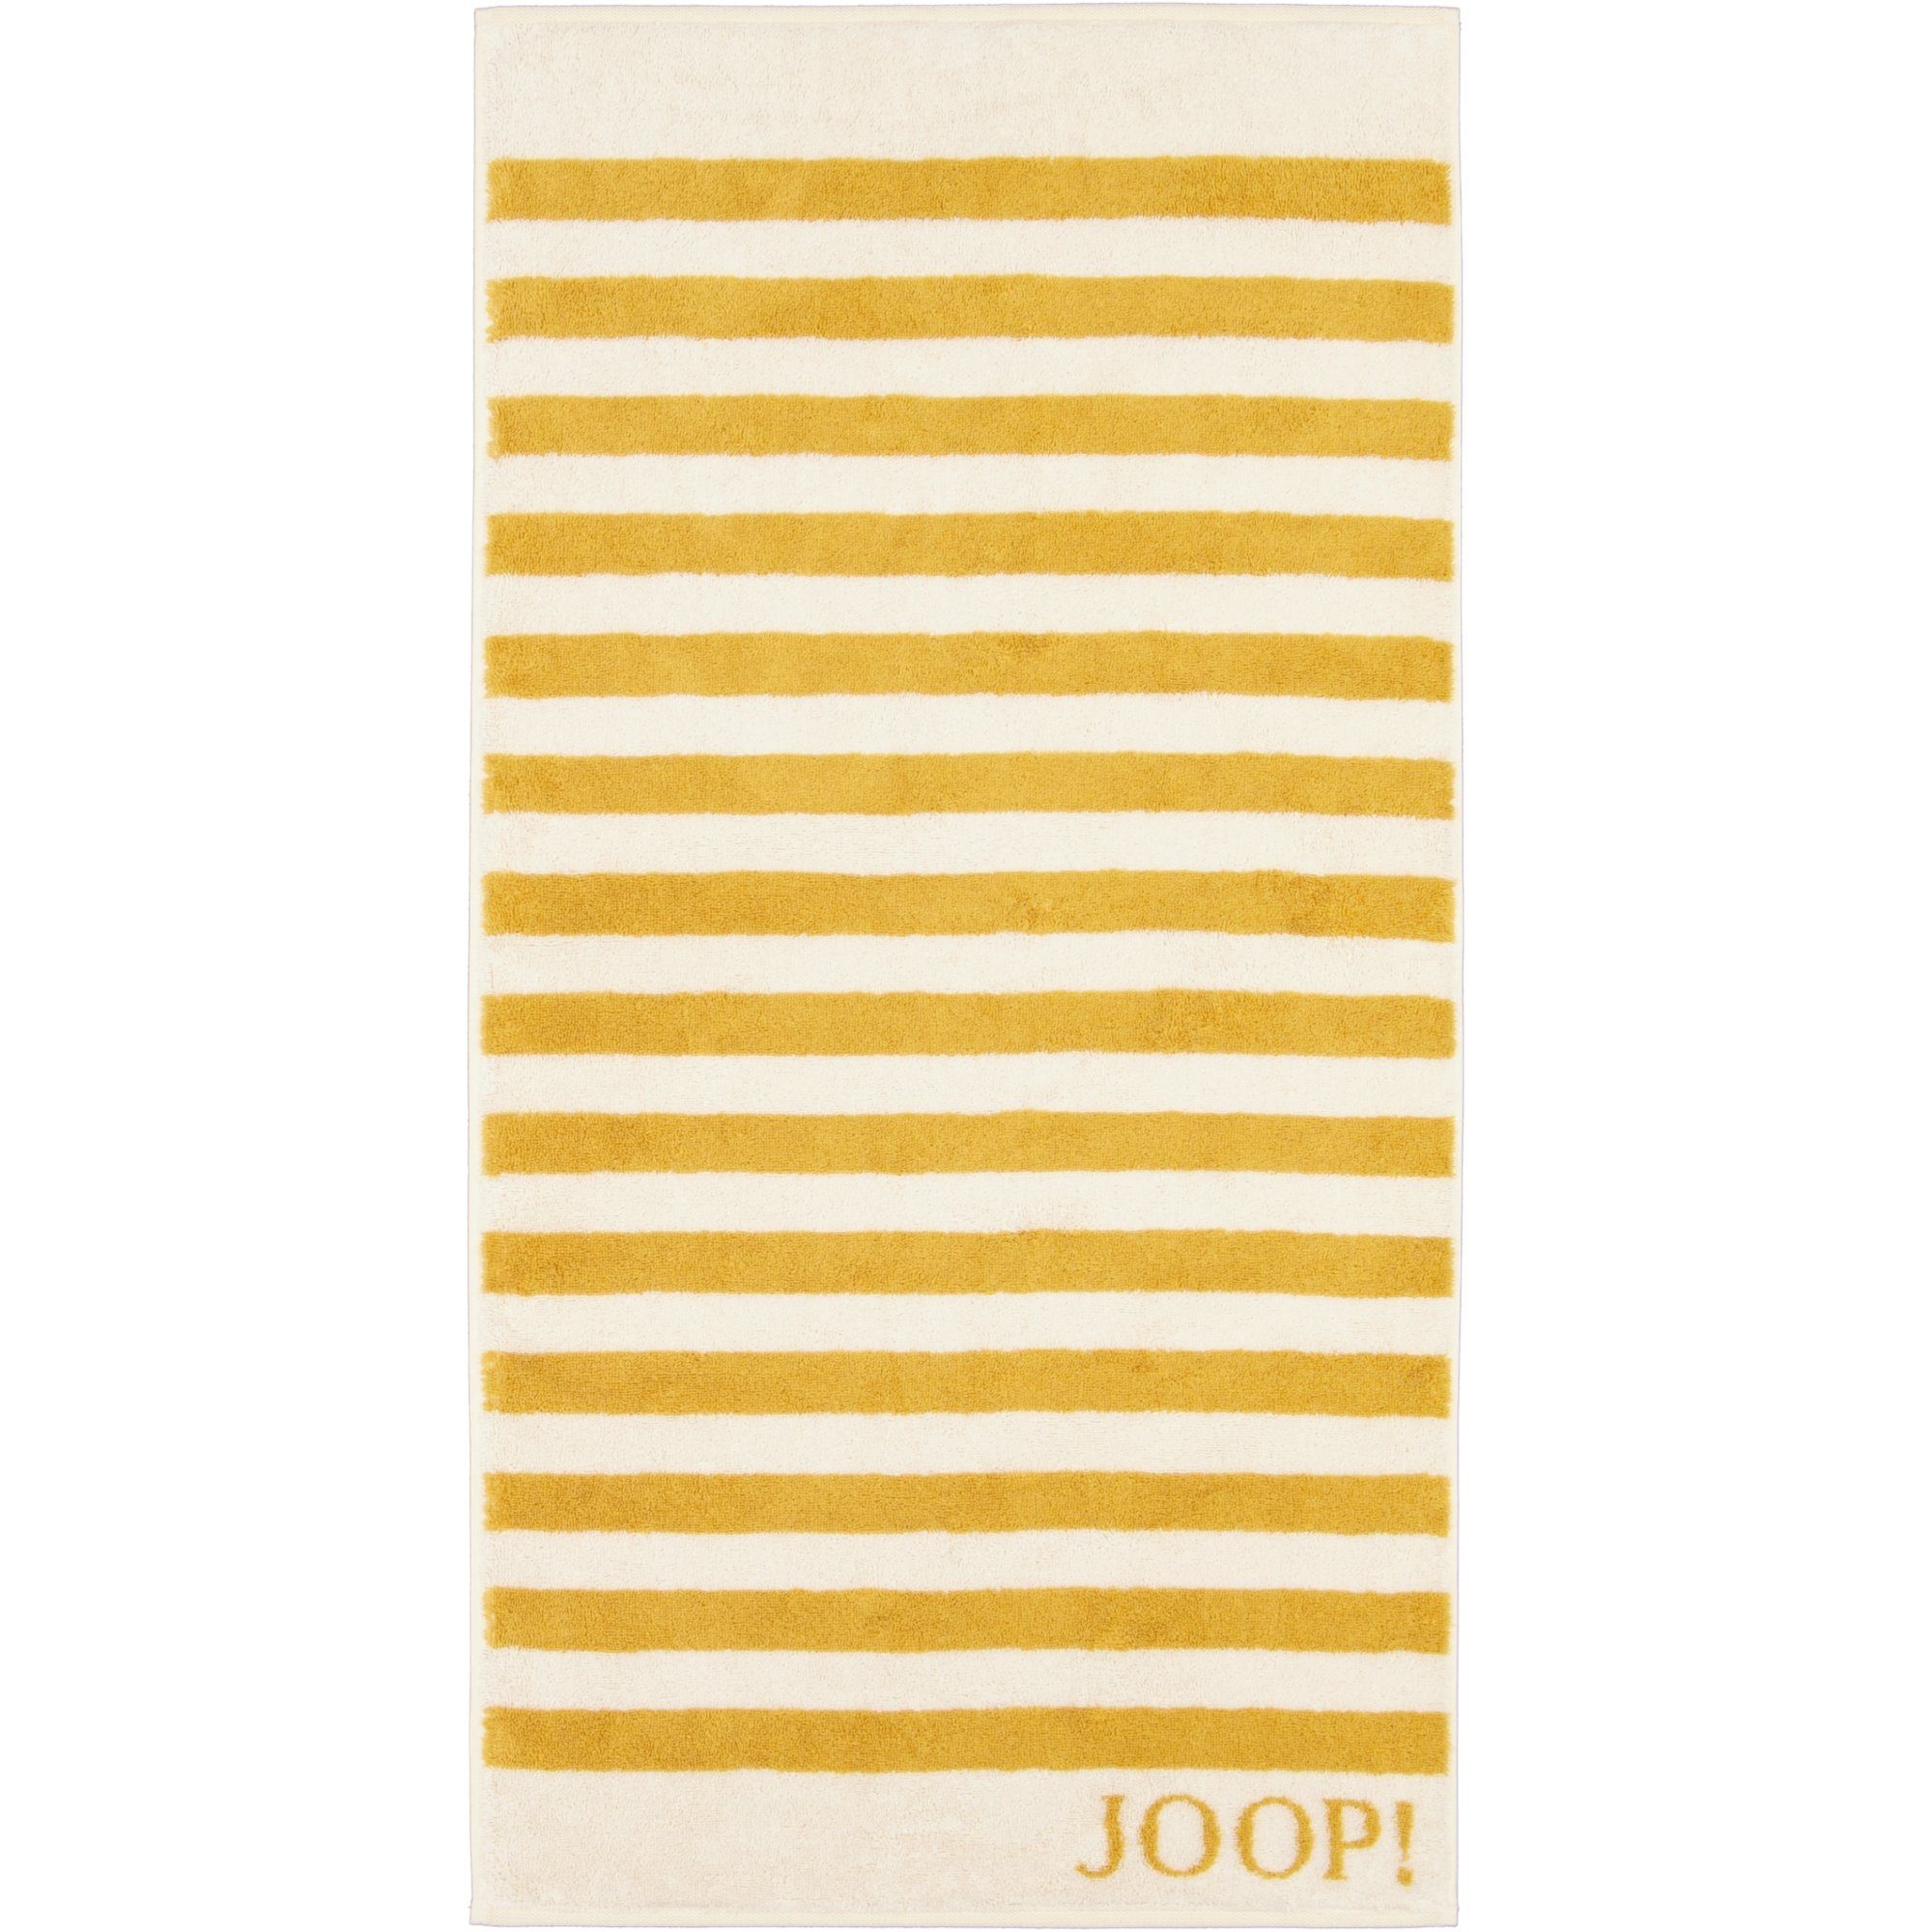 unbekannt Handtücher 100% Joop! Stripes Classic Baumwolle 1610,